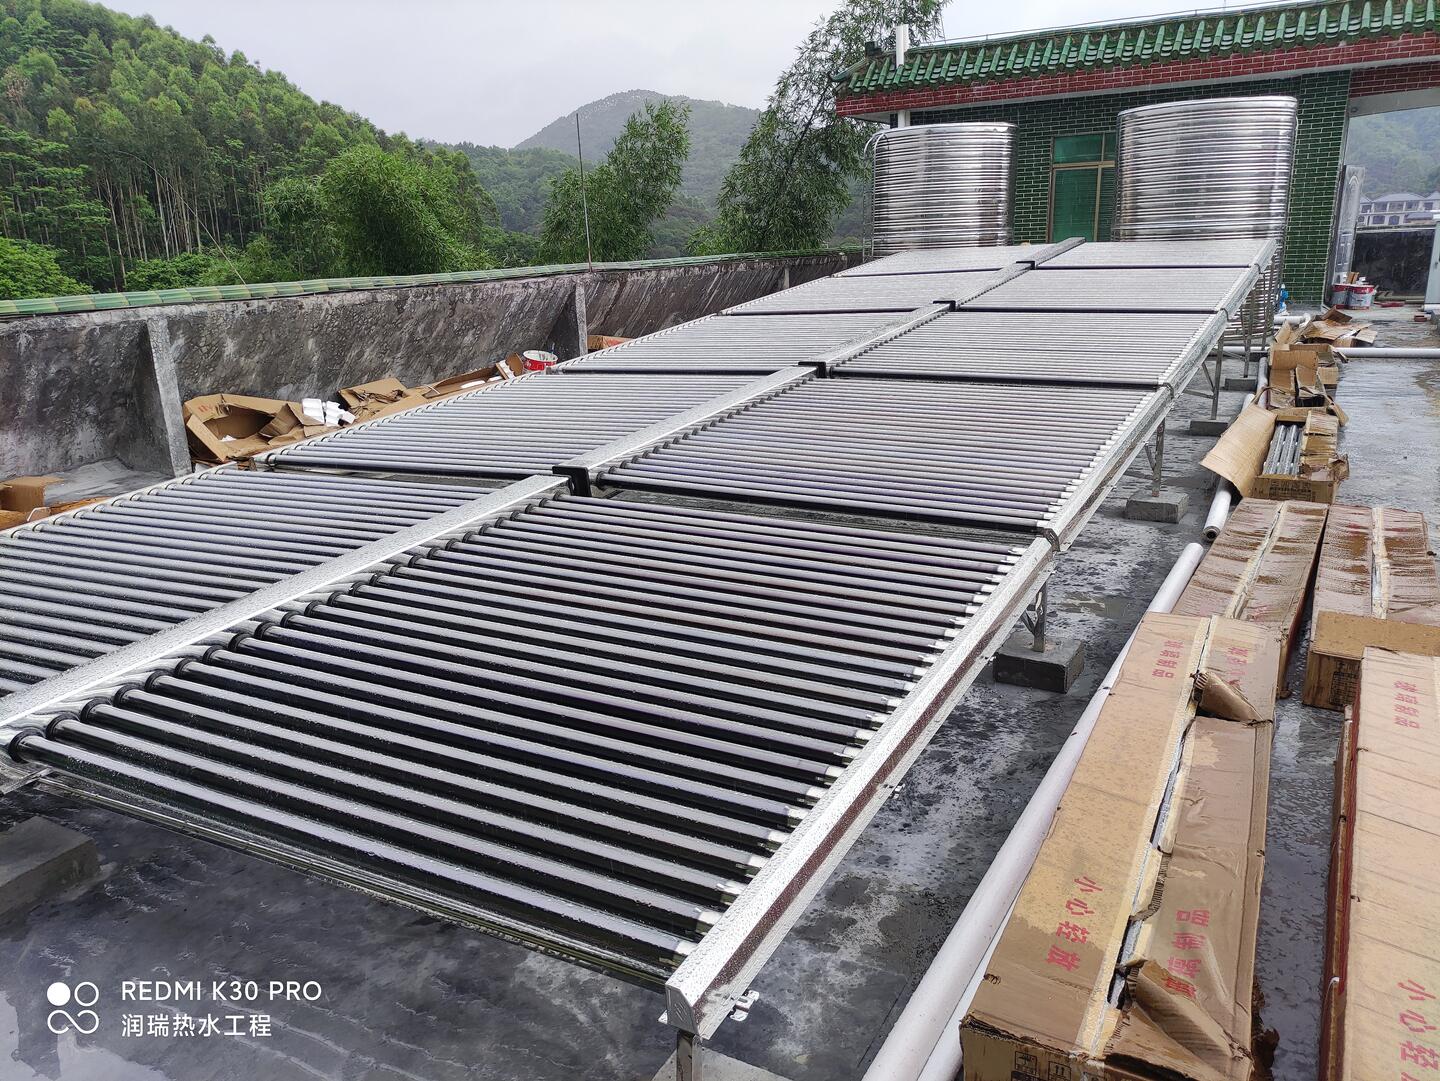 广州从化温泉酒店度假村海尔空气能热泵辅助太阳能真空管热水安装